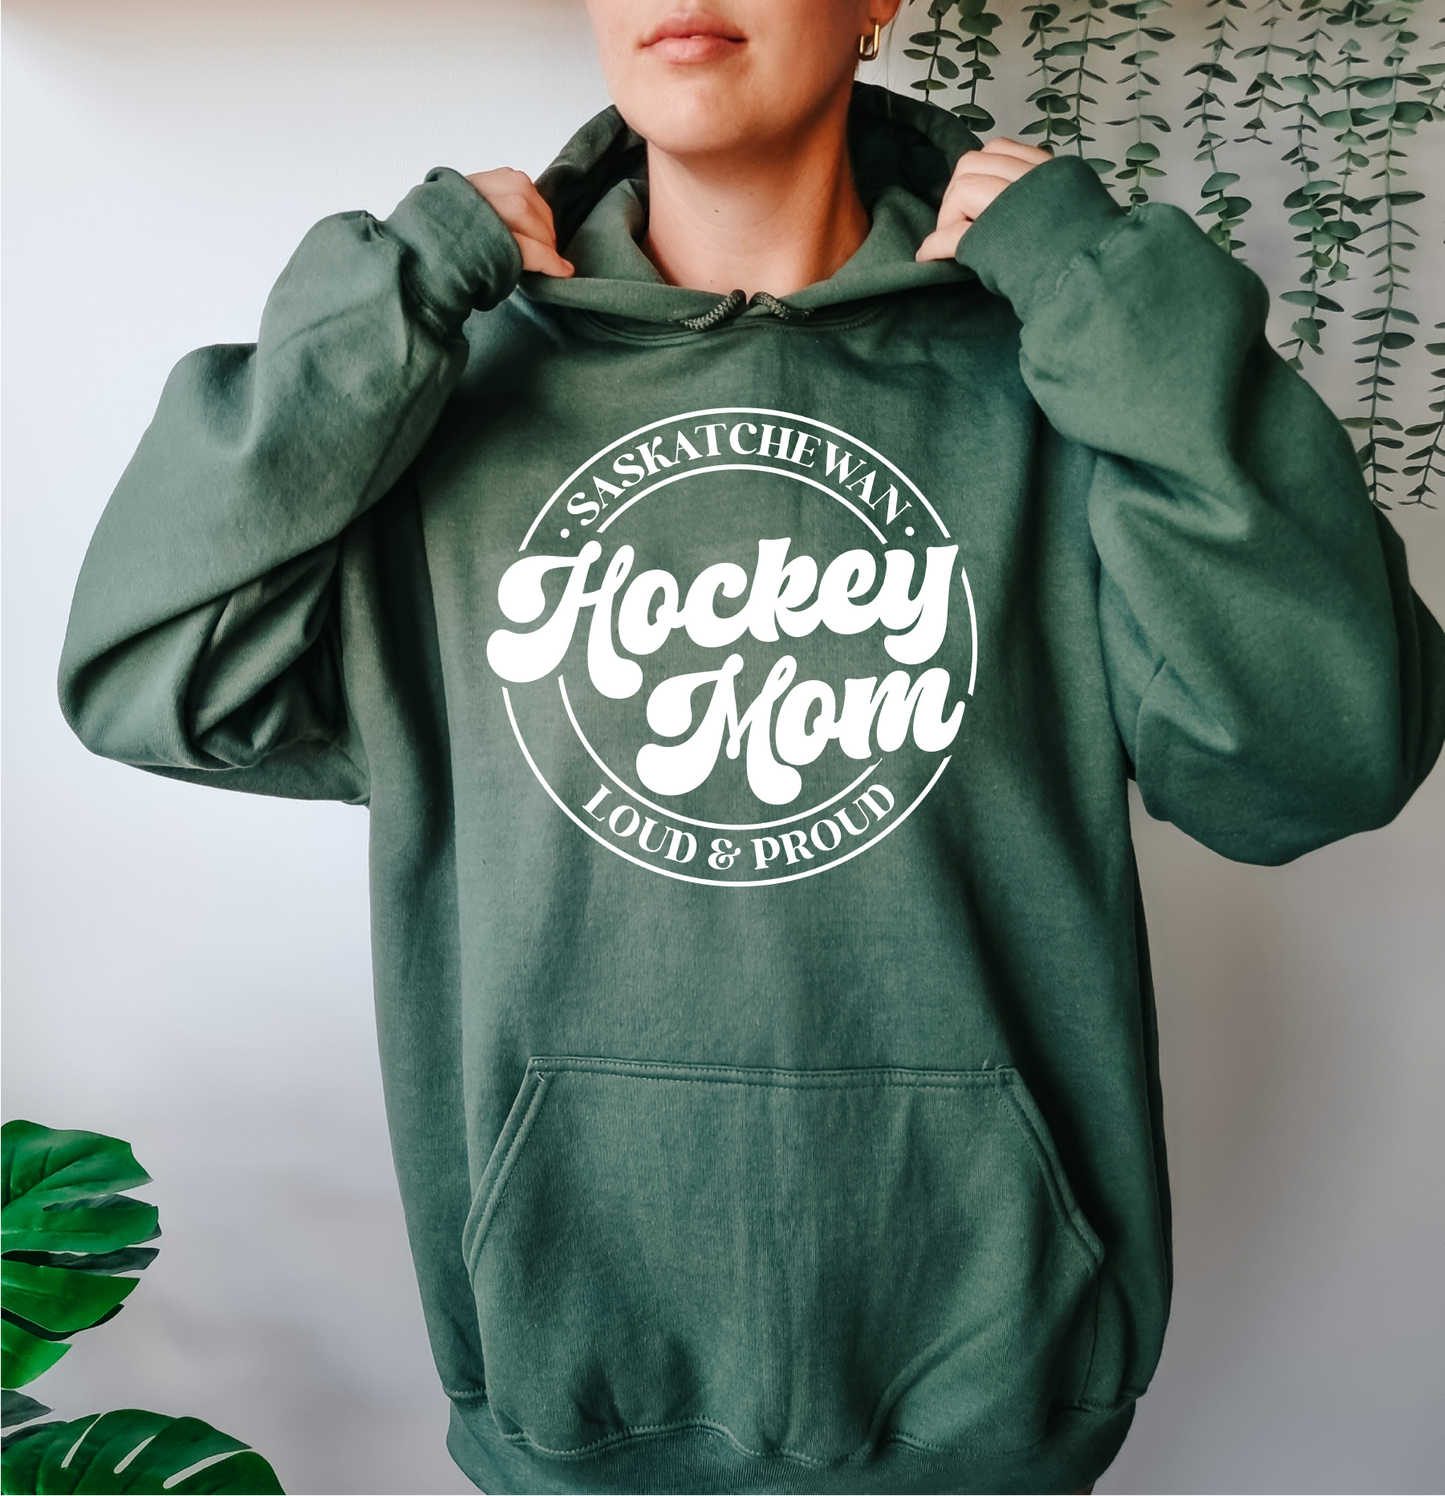 Saskatchewan Hockey Mom - Loud & Proud Hoodie